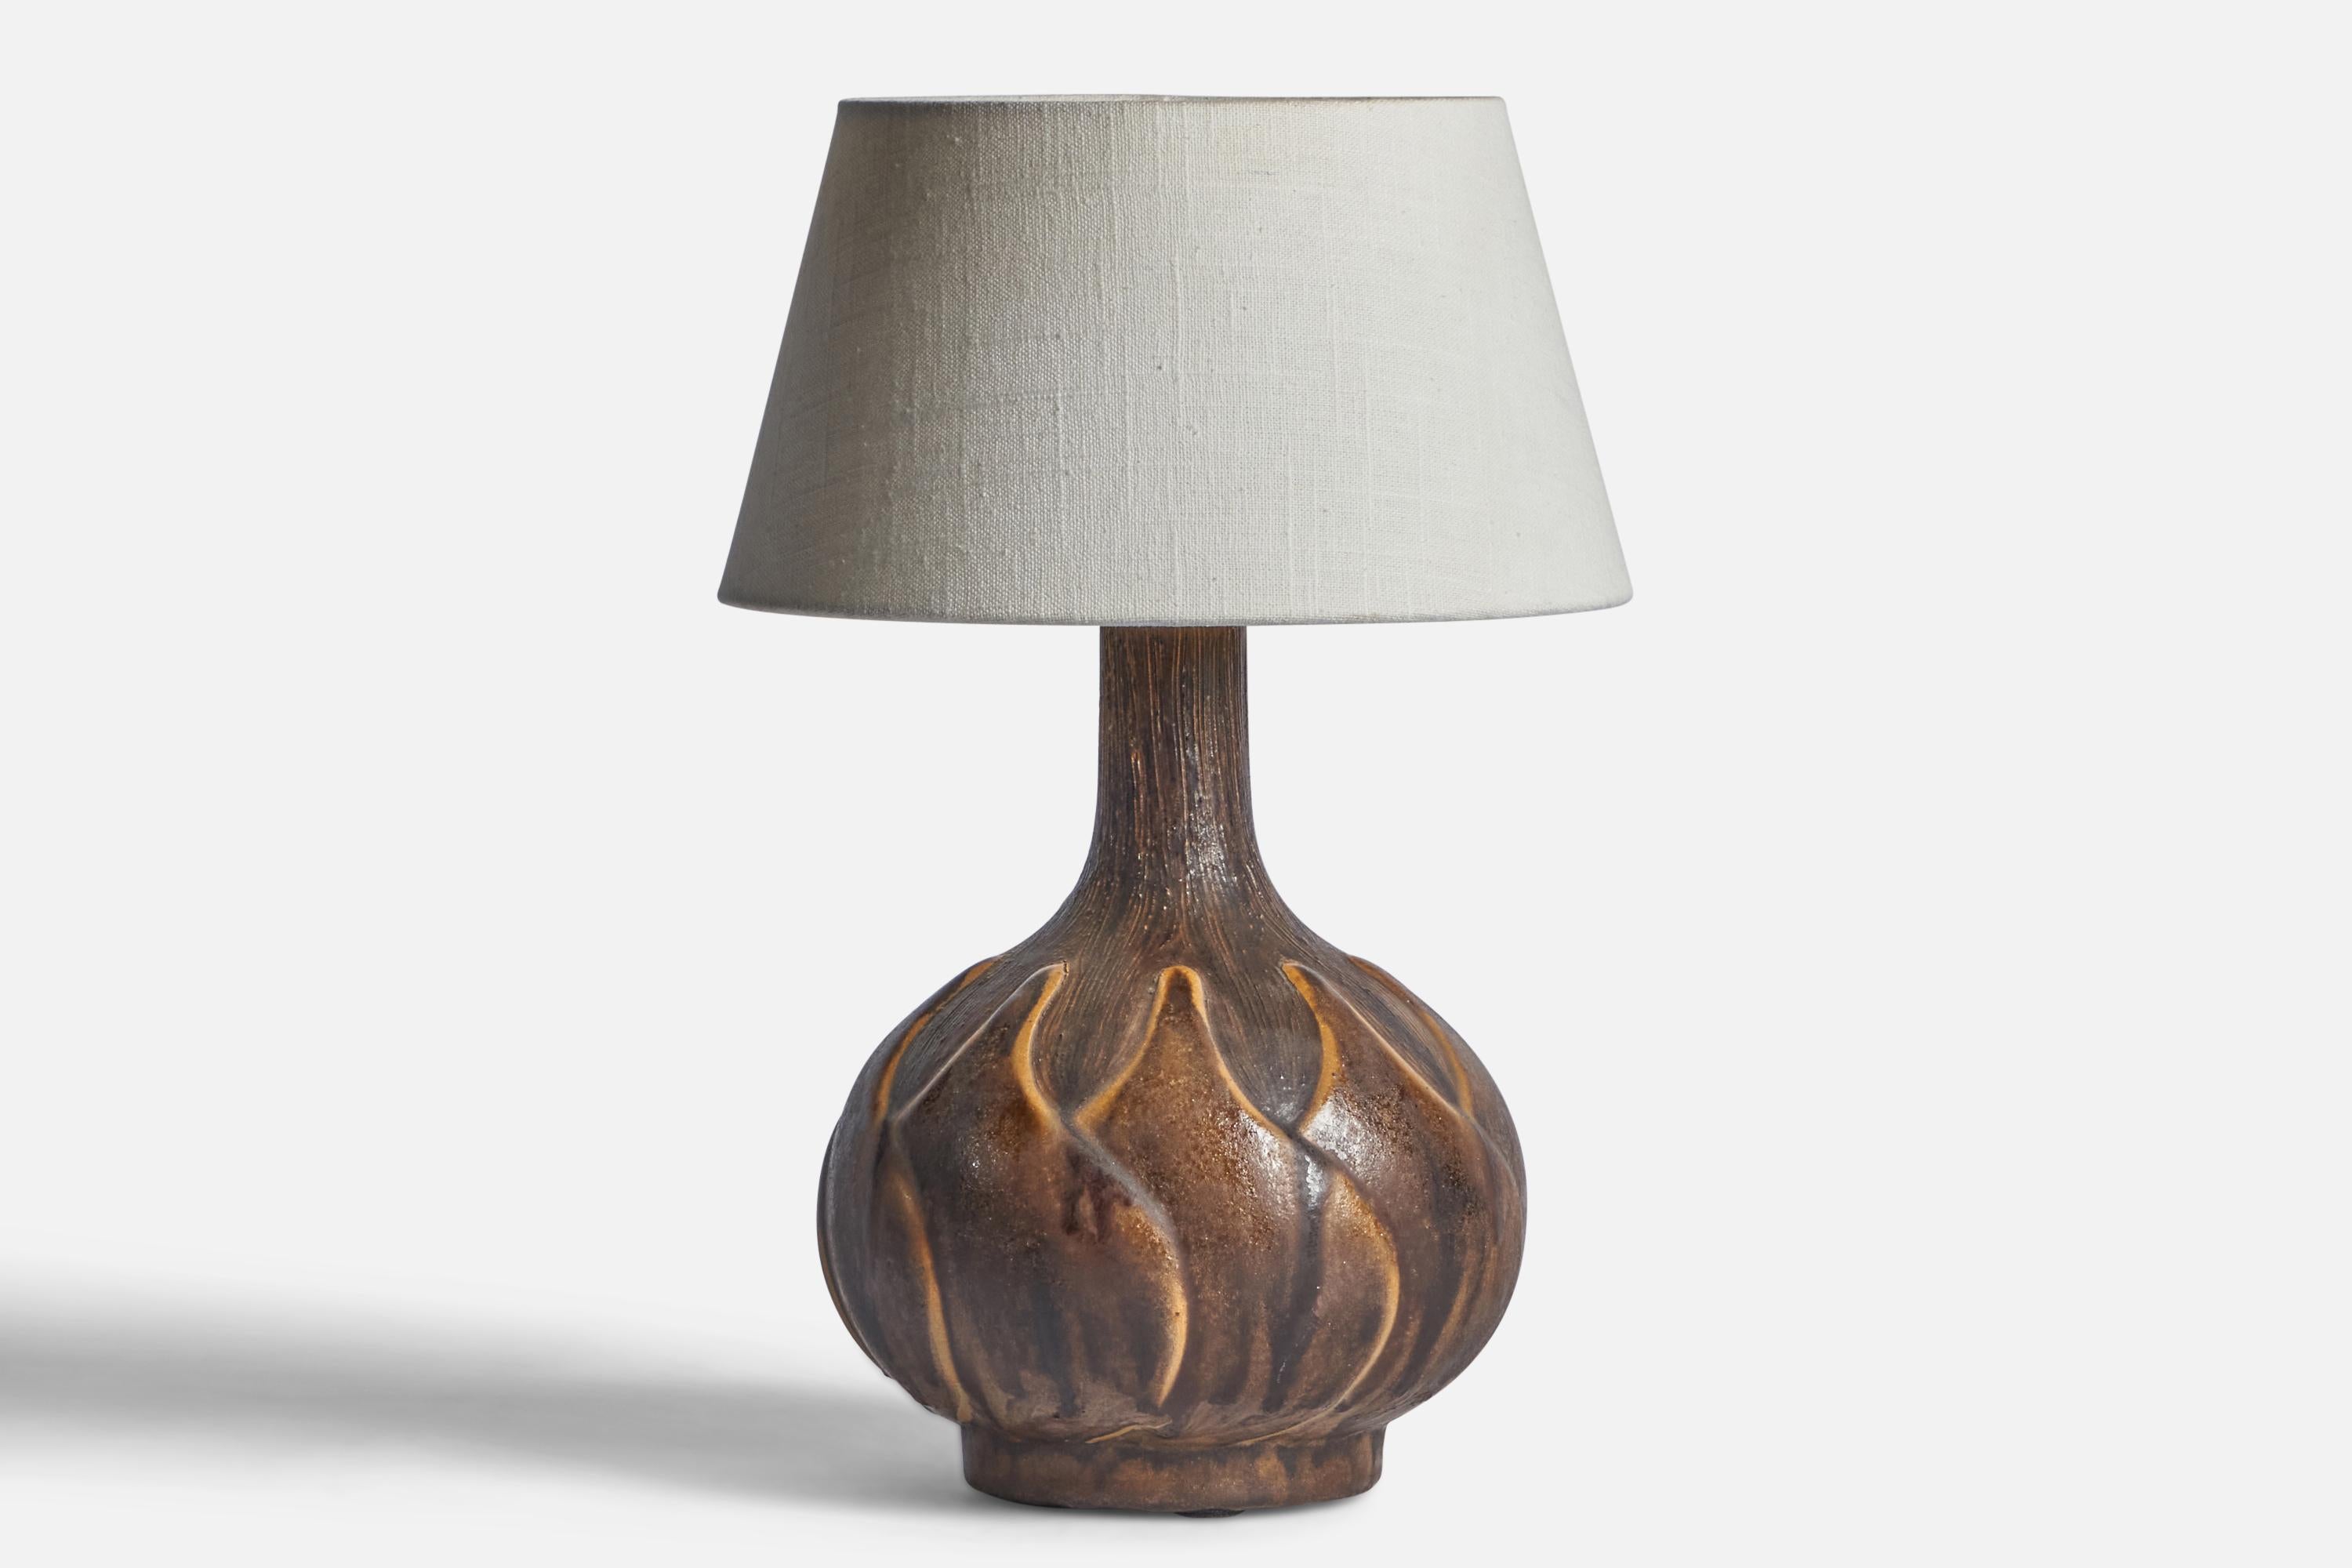 Tischlampe aus braun glasierter Keramik, entworfen und hergestellt in Dänemark, 1960er Jahre.

Abmessungen der Lampe (Zoll): 12,35